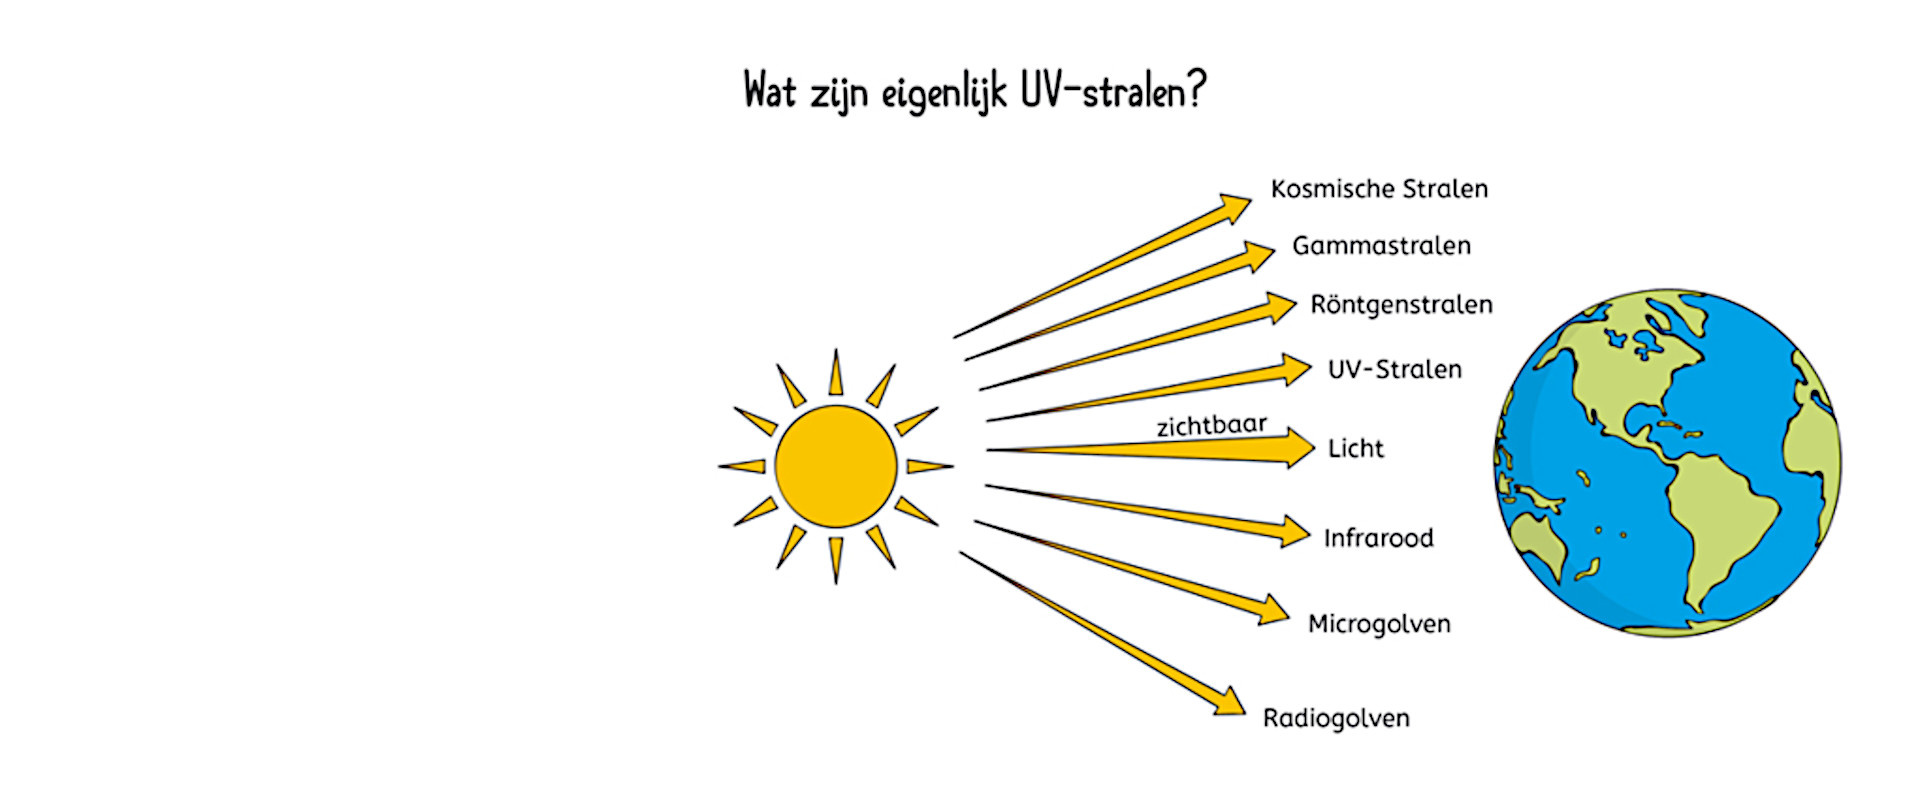 Wat zijn eigenlijk UV-stralen?